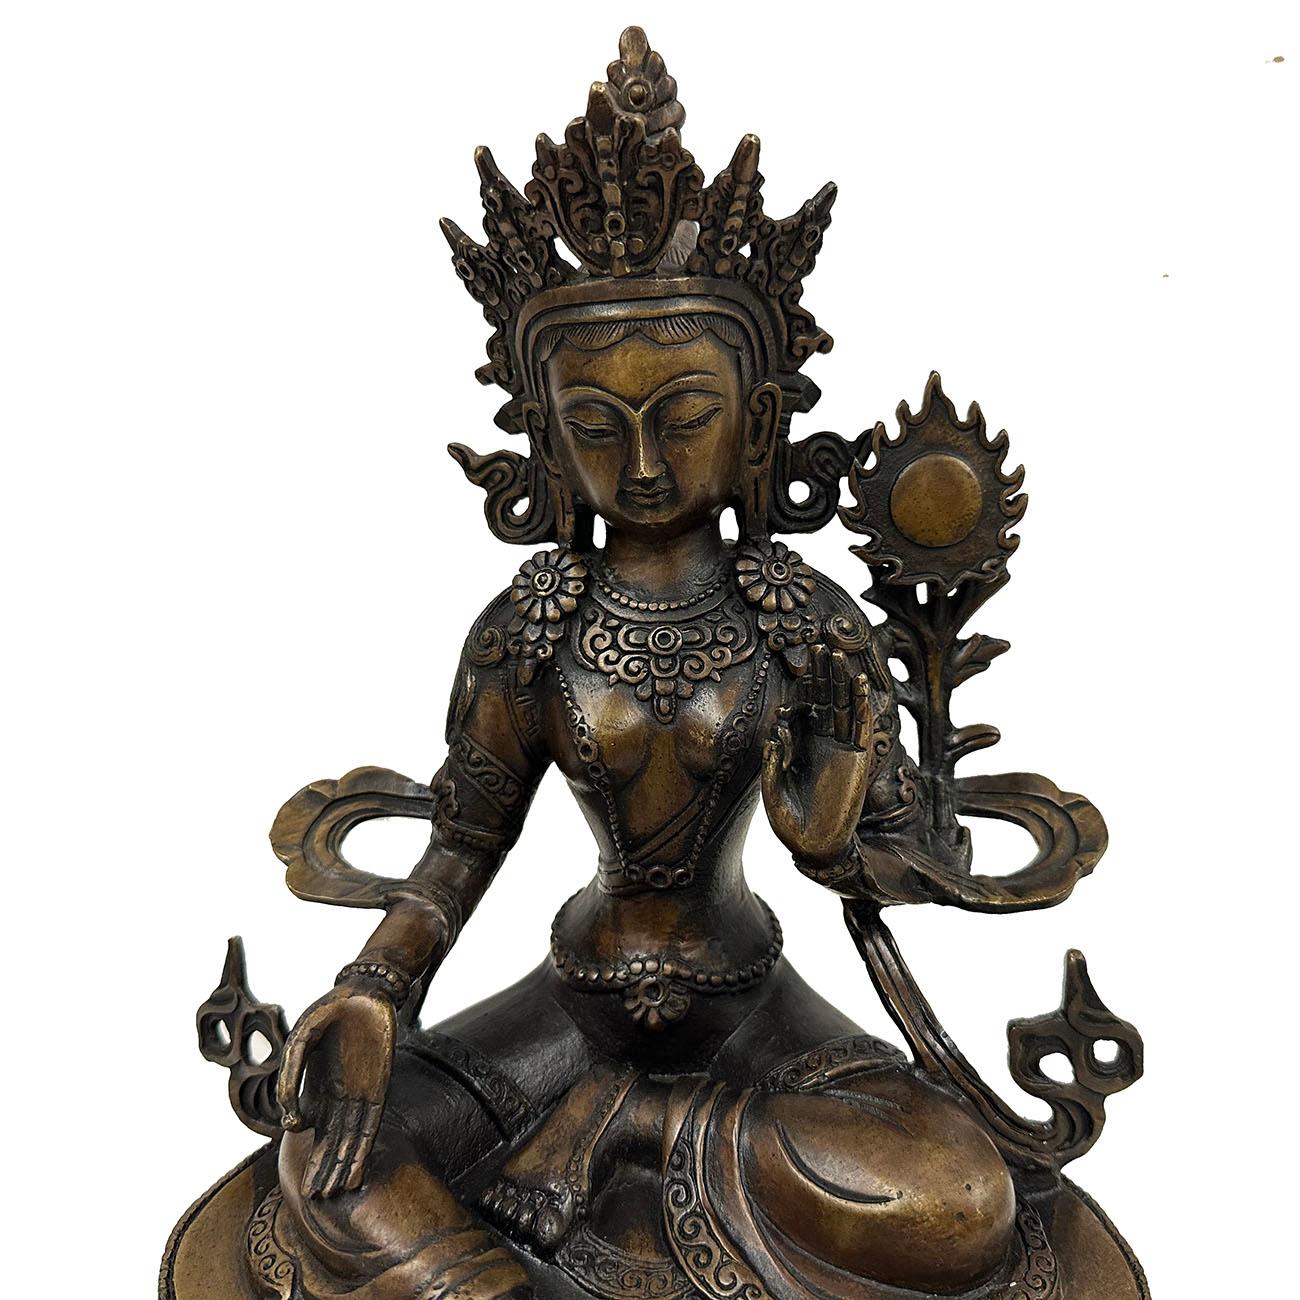 Il s'agit d'une magnifique sculpture en bronze de la Tara tibétaine. Cette Tara est décorée de fleurs, de lariats et de bracelets de cheville. Elle porte une couronne élaborée et est assise sur un trône de lotus. Les mains qui se lèvent symbolisent